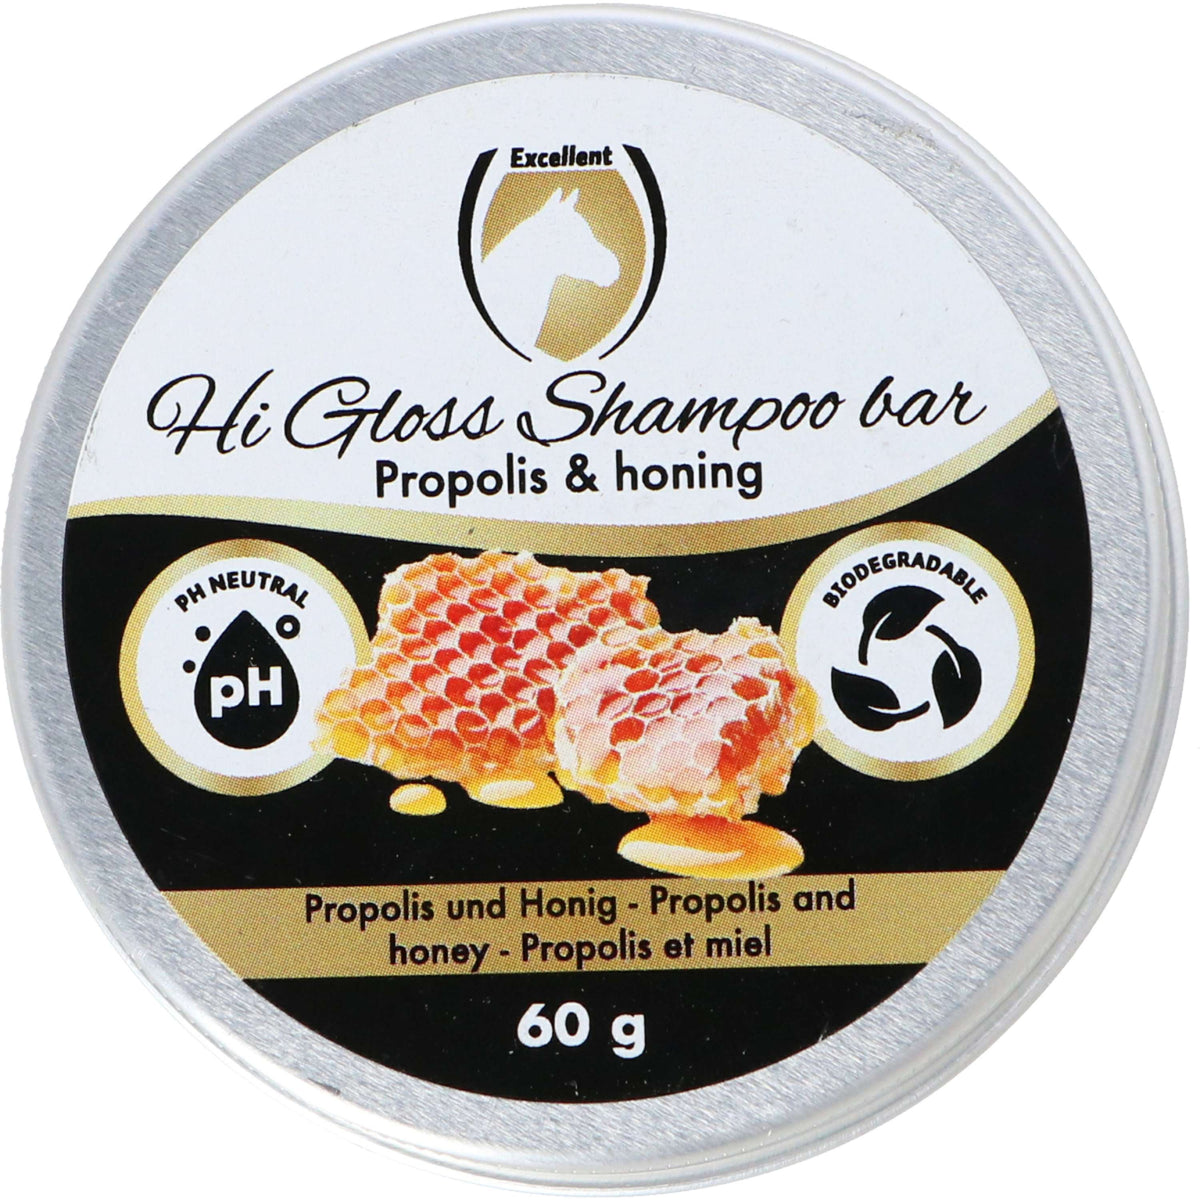 Excellent Shampoo Block Hi Gloss Propolis